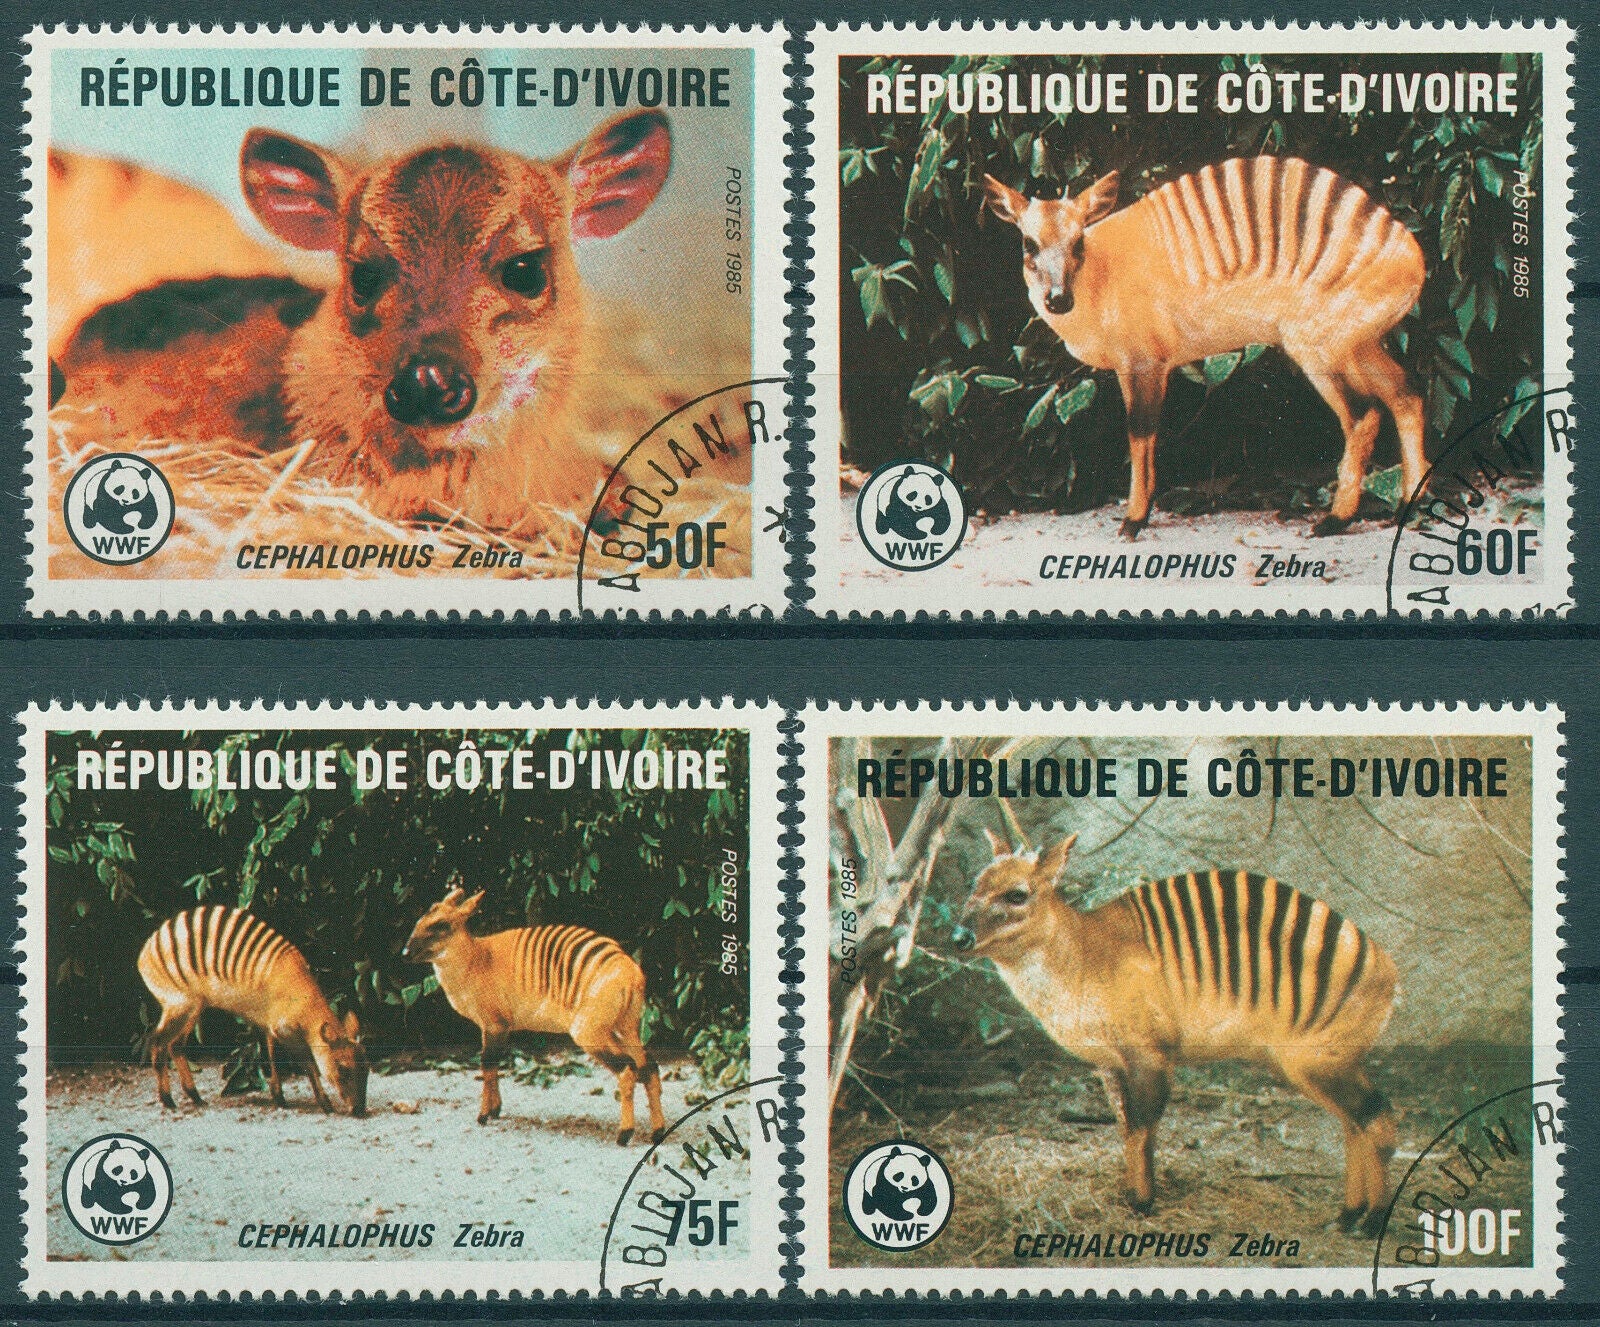 Ivory Coast 1985 CTO WWF Stamps Banded Zebra Duiker Wild Animals 4v Set